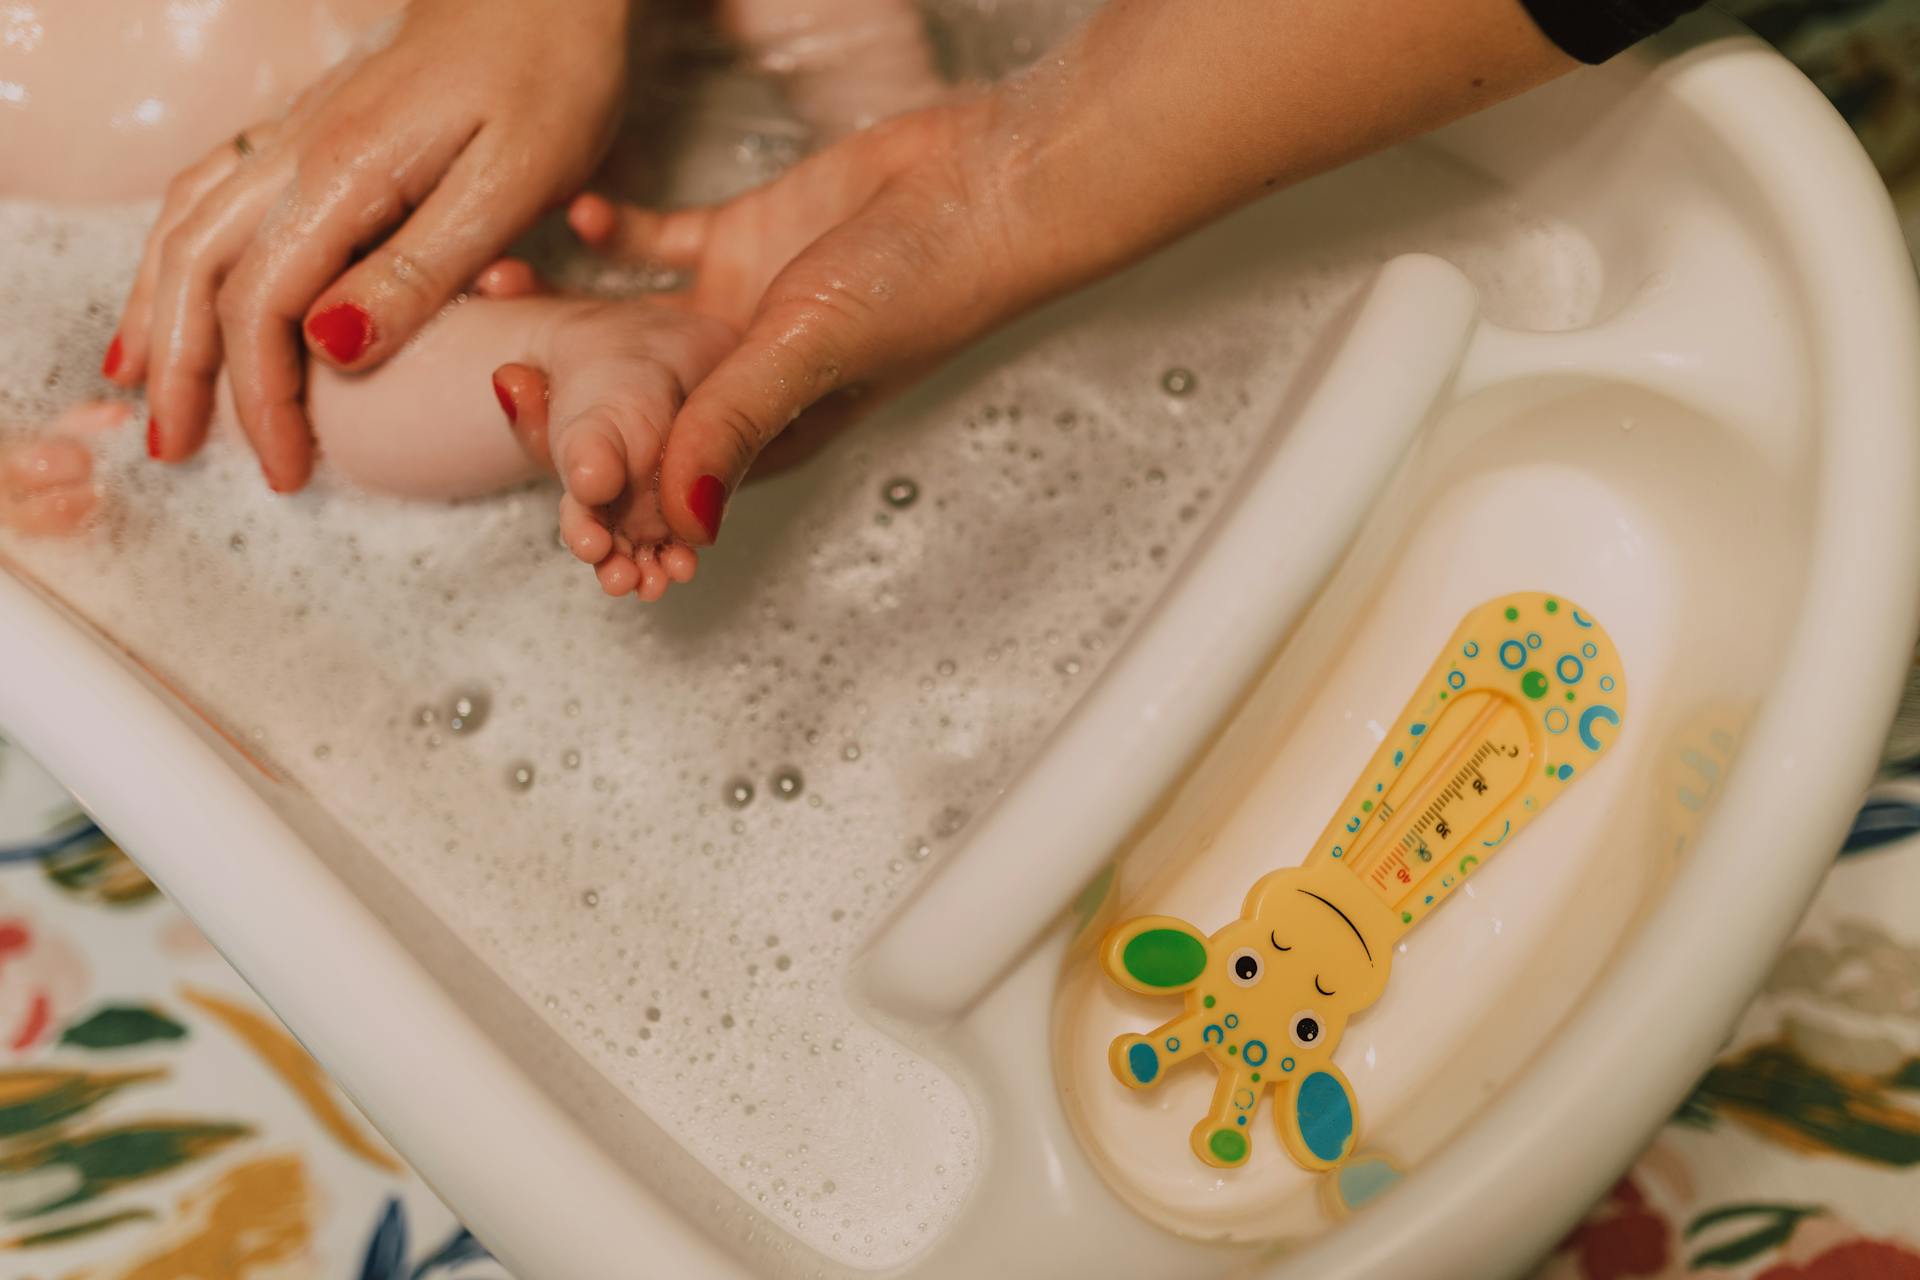 Une femme donne le bain à un bébé | Source : Pexels